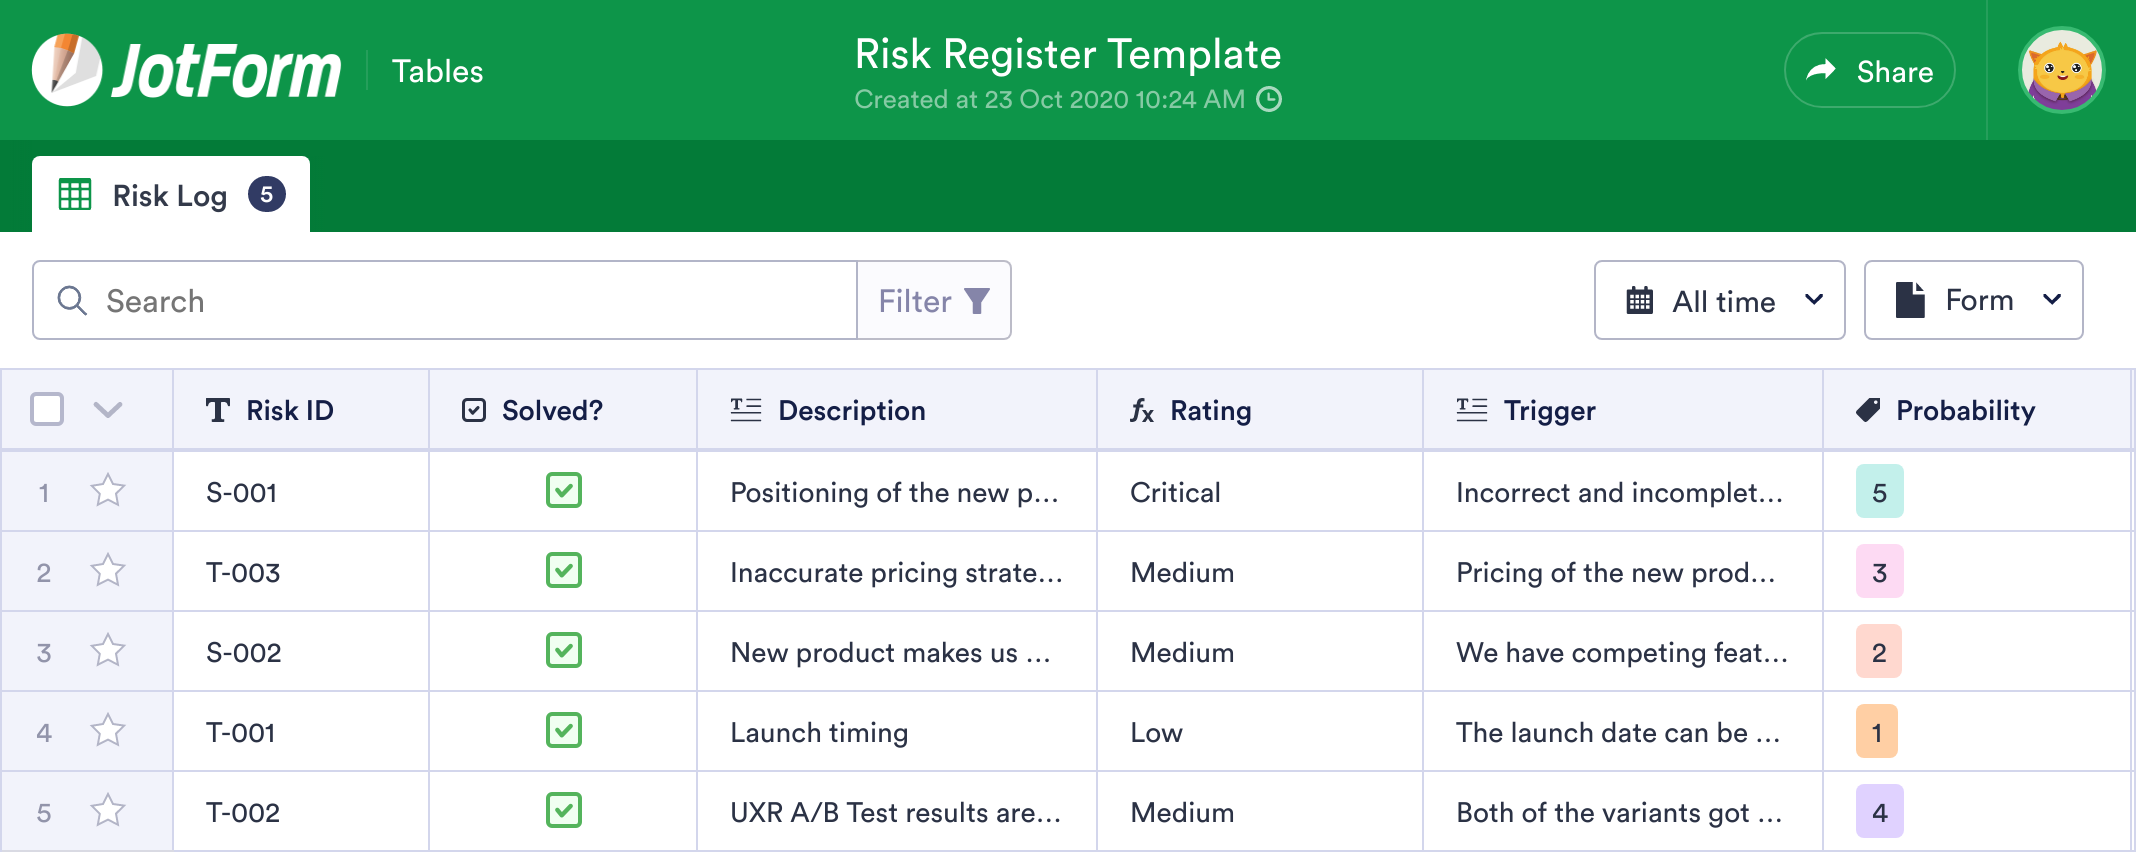 Risk Register Template | JotForm Tables